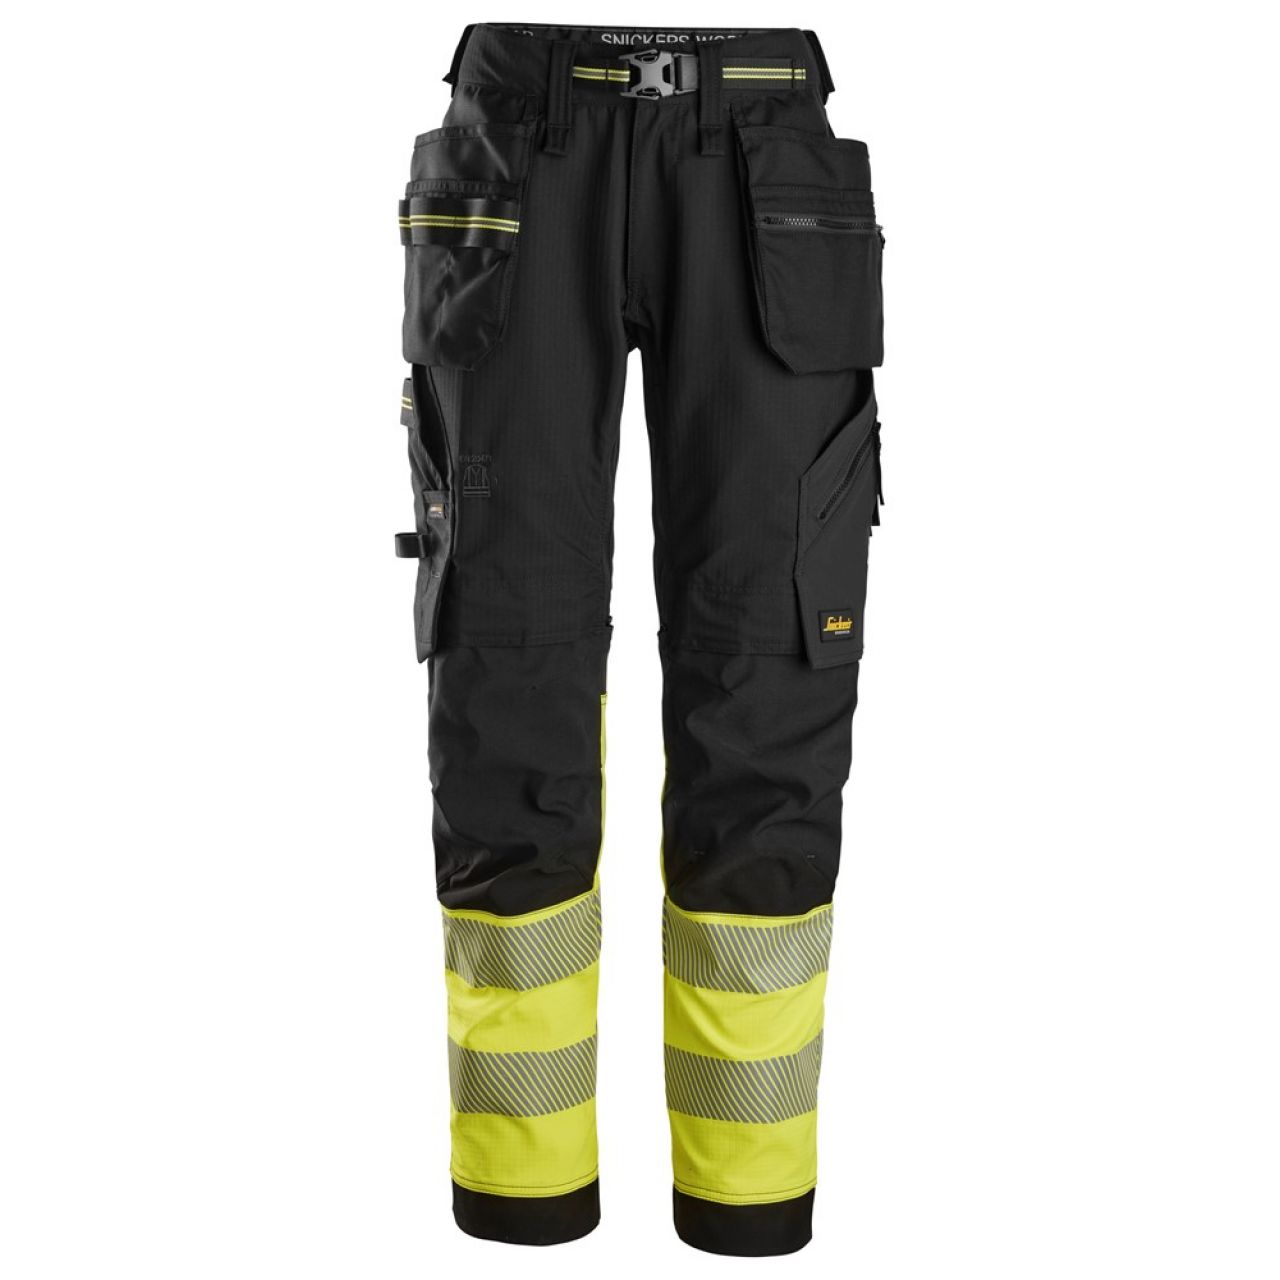 6934 Pantalones largos de trabajo elásticos de alta visibilidad clase 1 con bolsillos flotantes negro-amarillo talla 48